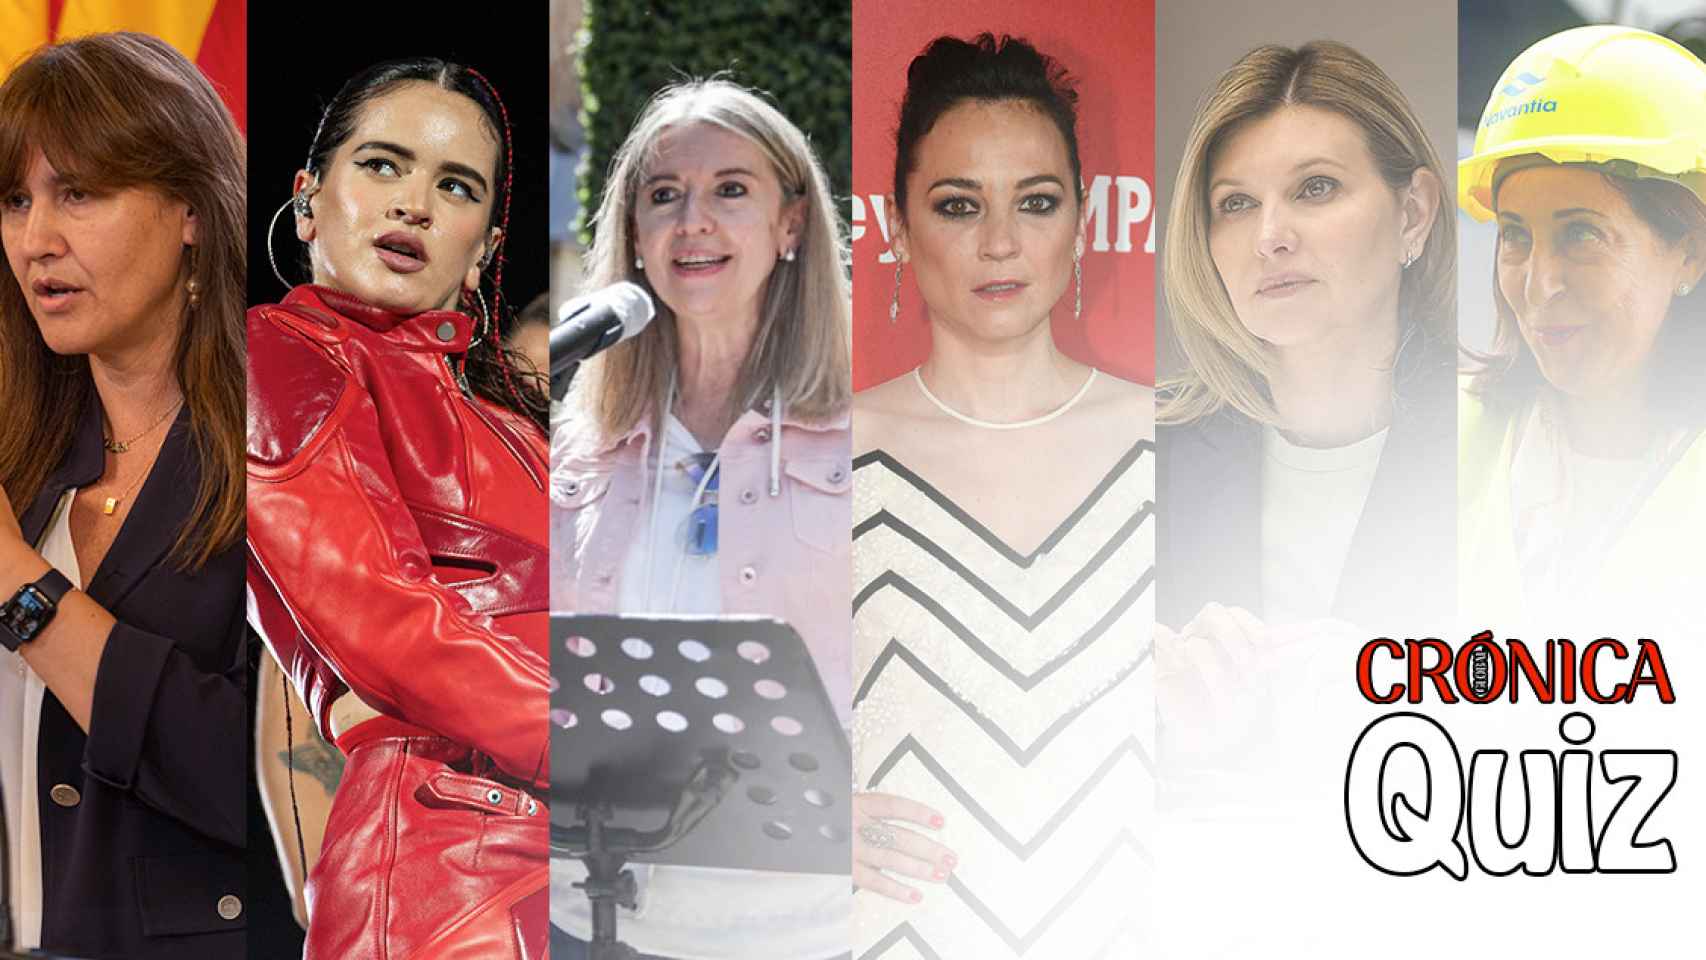 Laura Borràs, Rosalía, Olena Zelenska y Margarita Robles, protagonistas de la semana en el quiz de Crónica Global